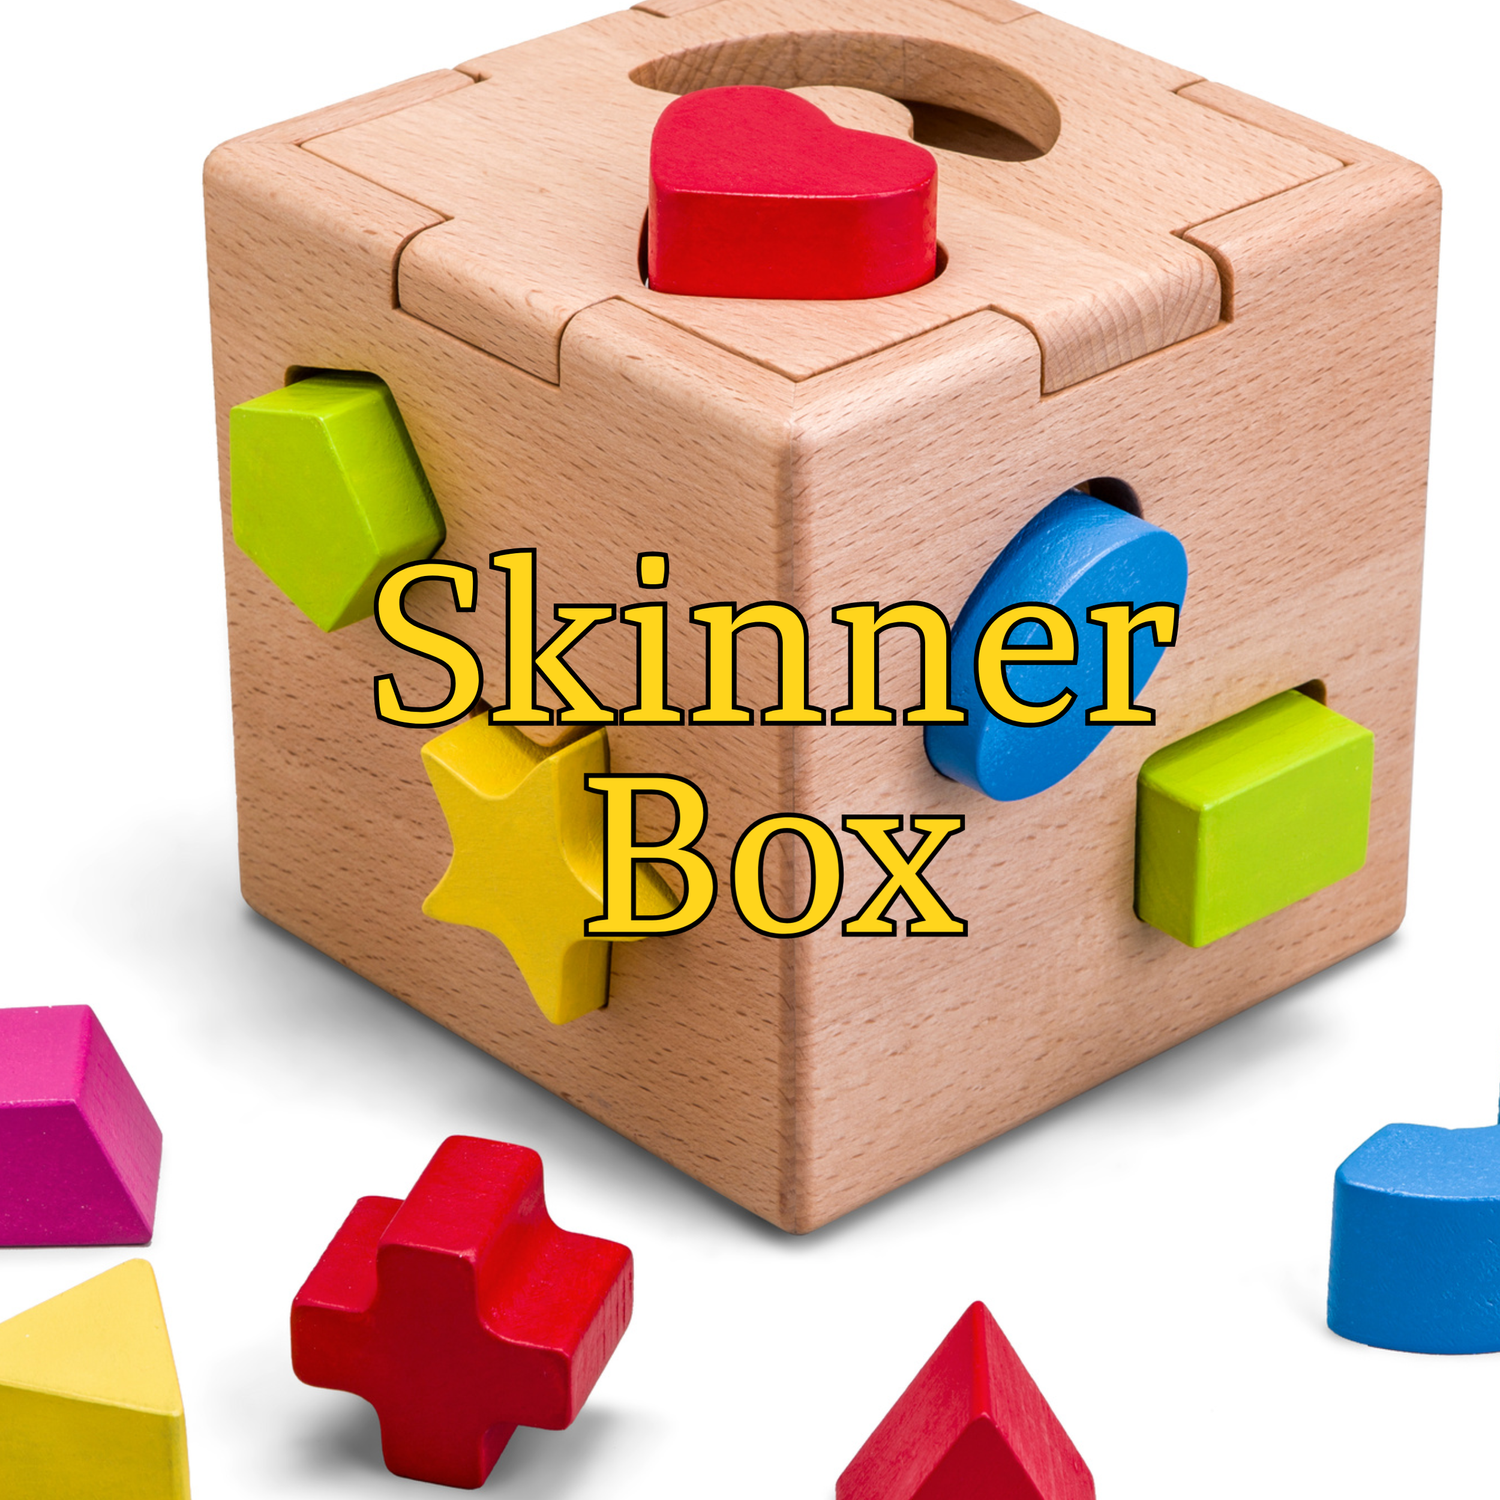 Skinner Box